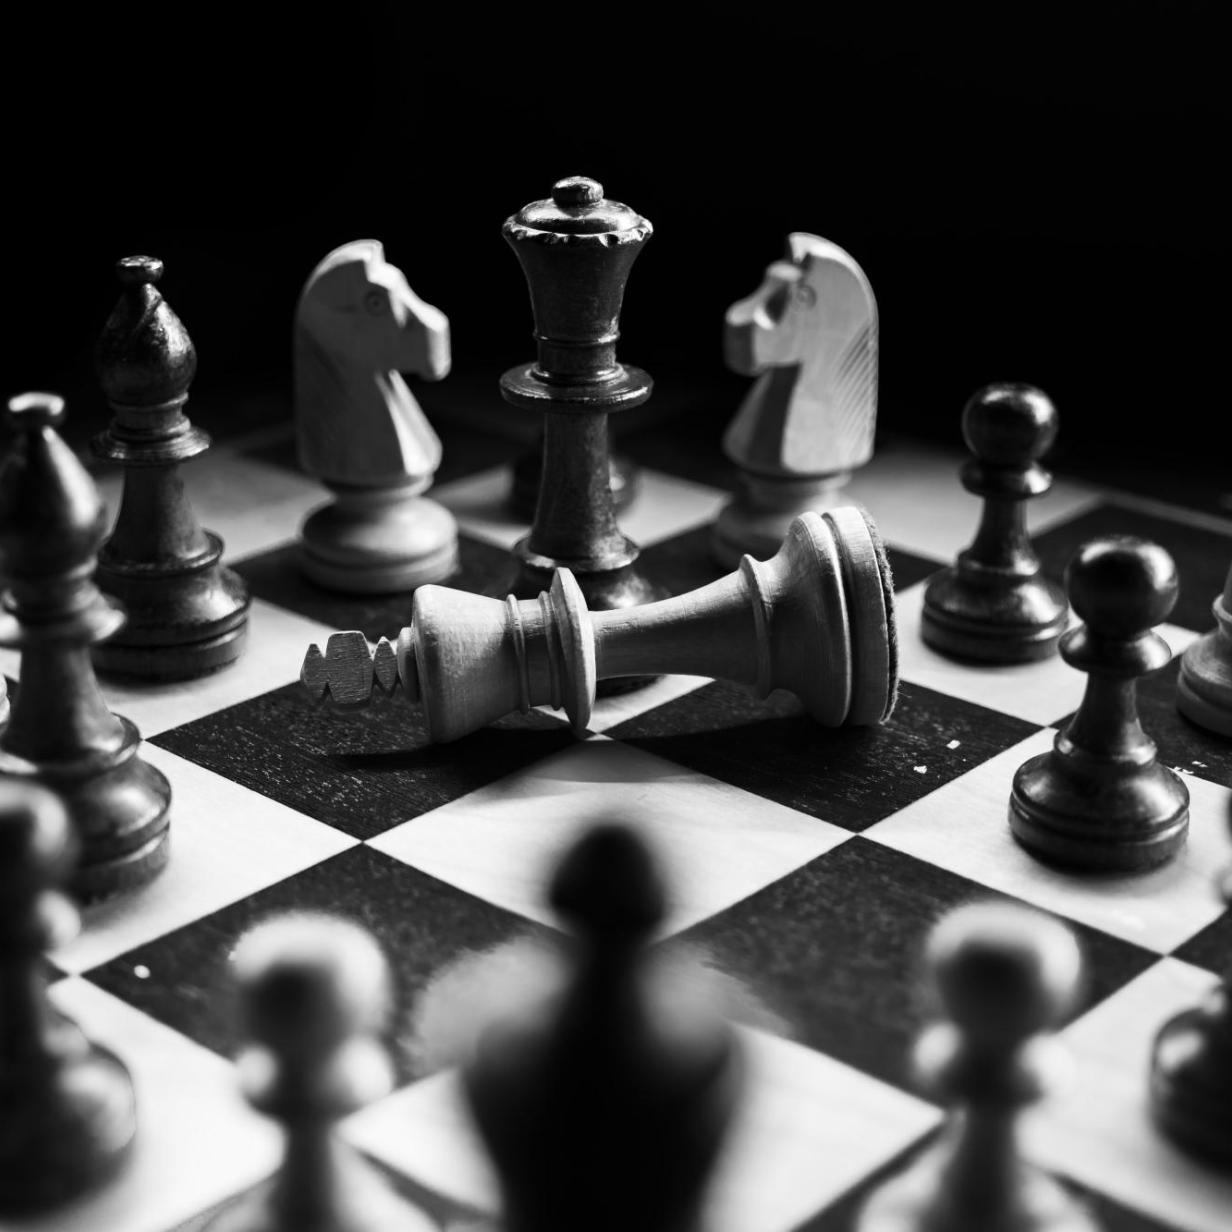 Schach-Betrug Hat Hans Niemann mit einem Sextoy geschummelt?